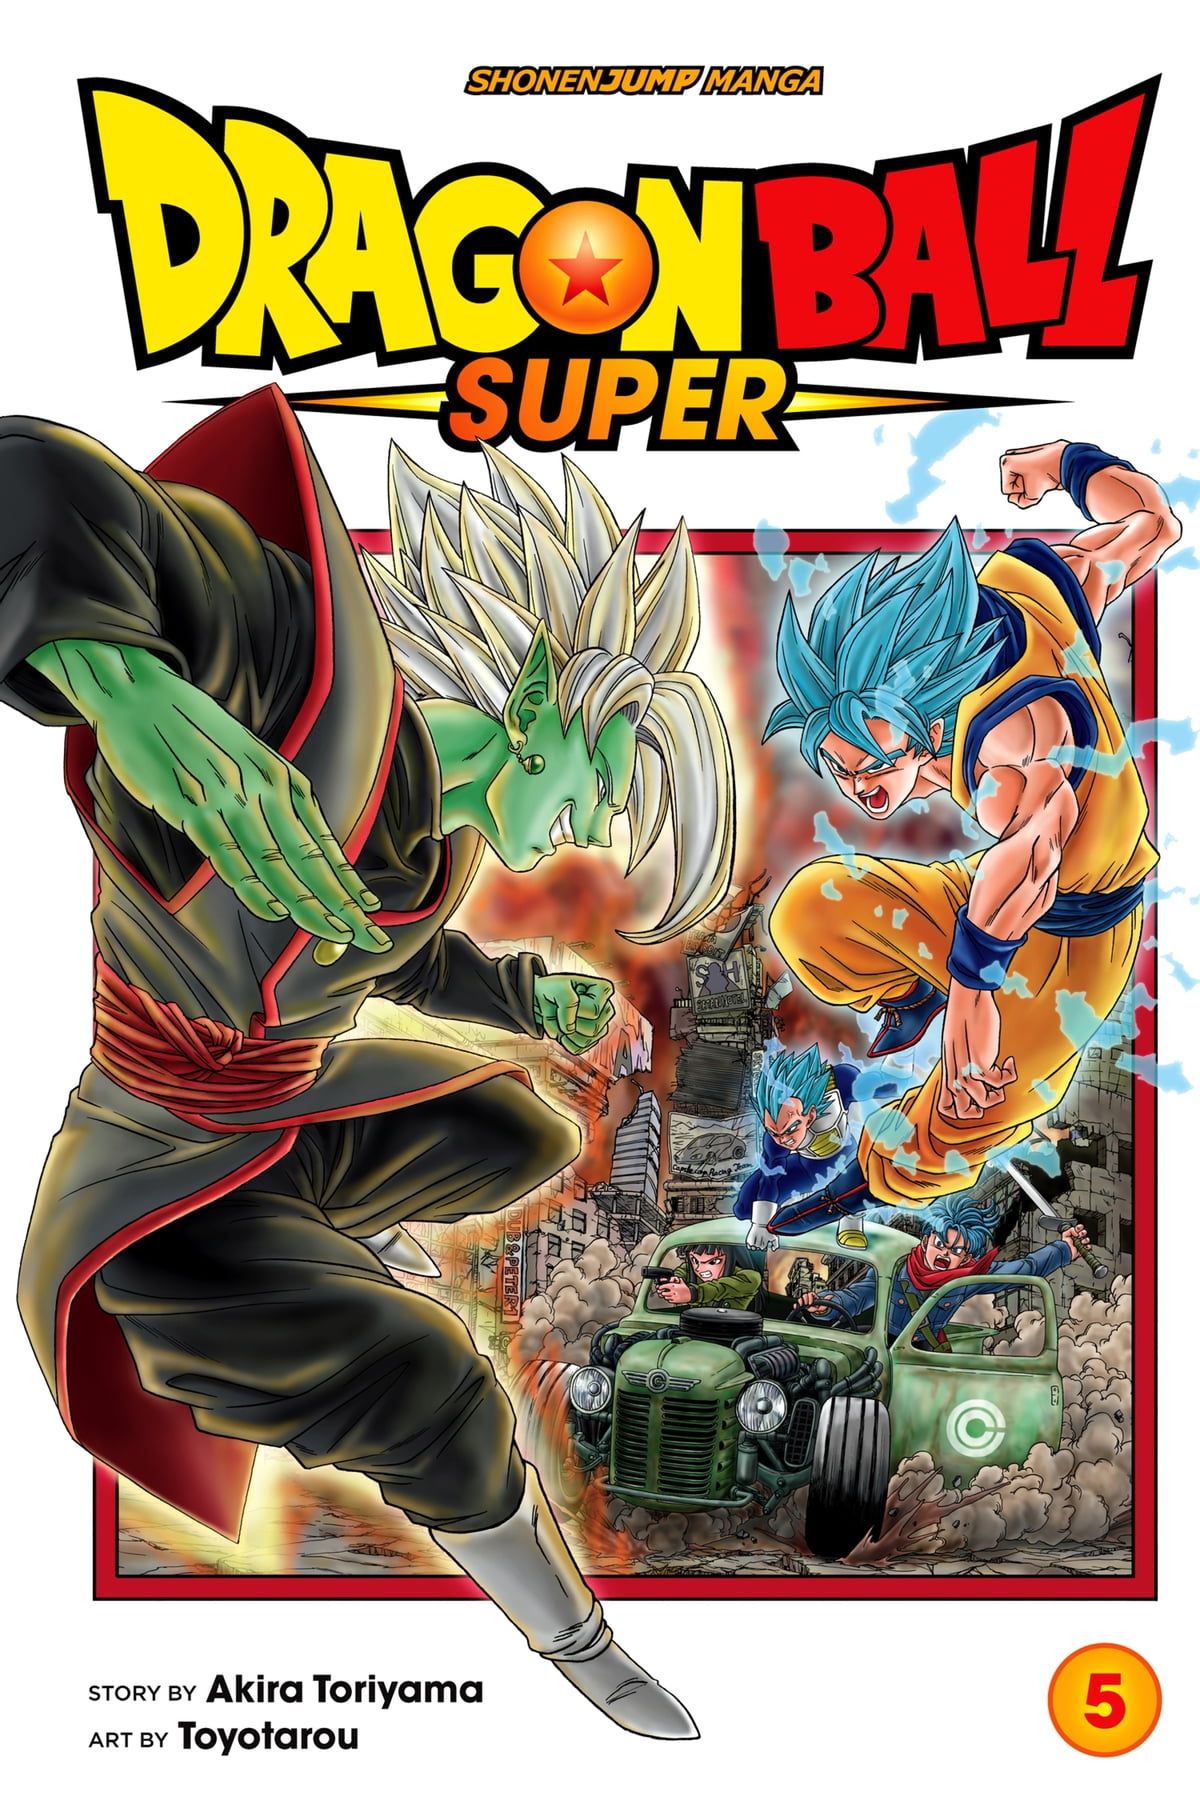 Mangá de Dragon Ball Super revela novo poder de Moro